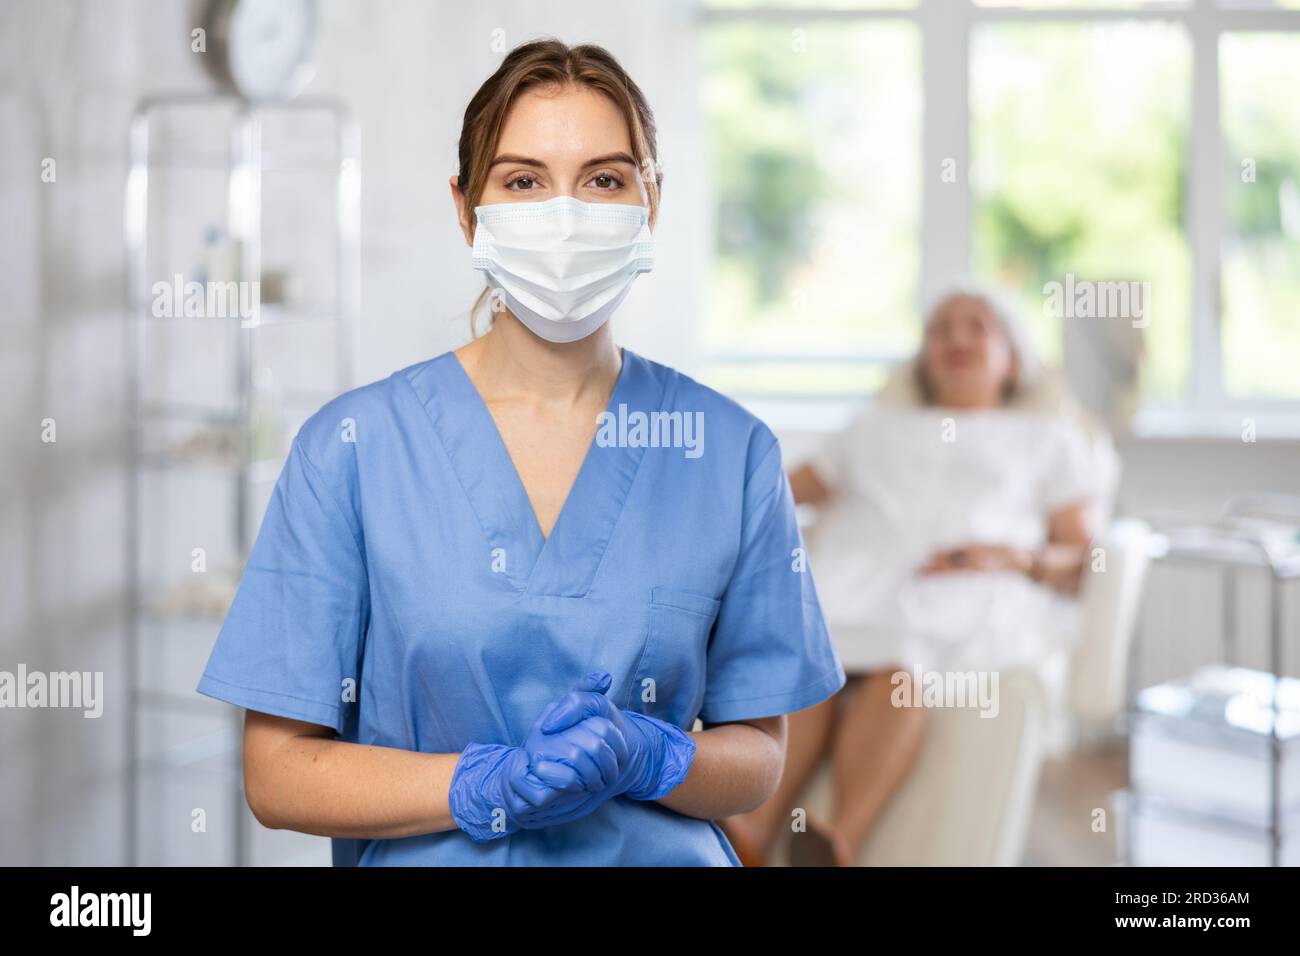 Glücklicher Arzt oder Krankenschwester mit Maske in Uniform mit gekreuztem Arm, Patient hinter dem Sofa. Stockfoto